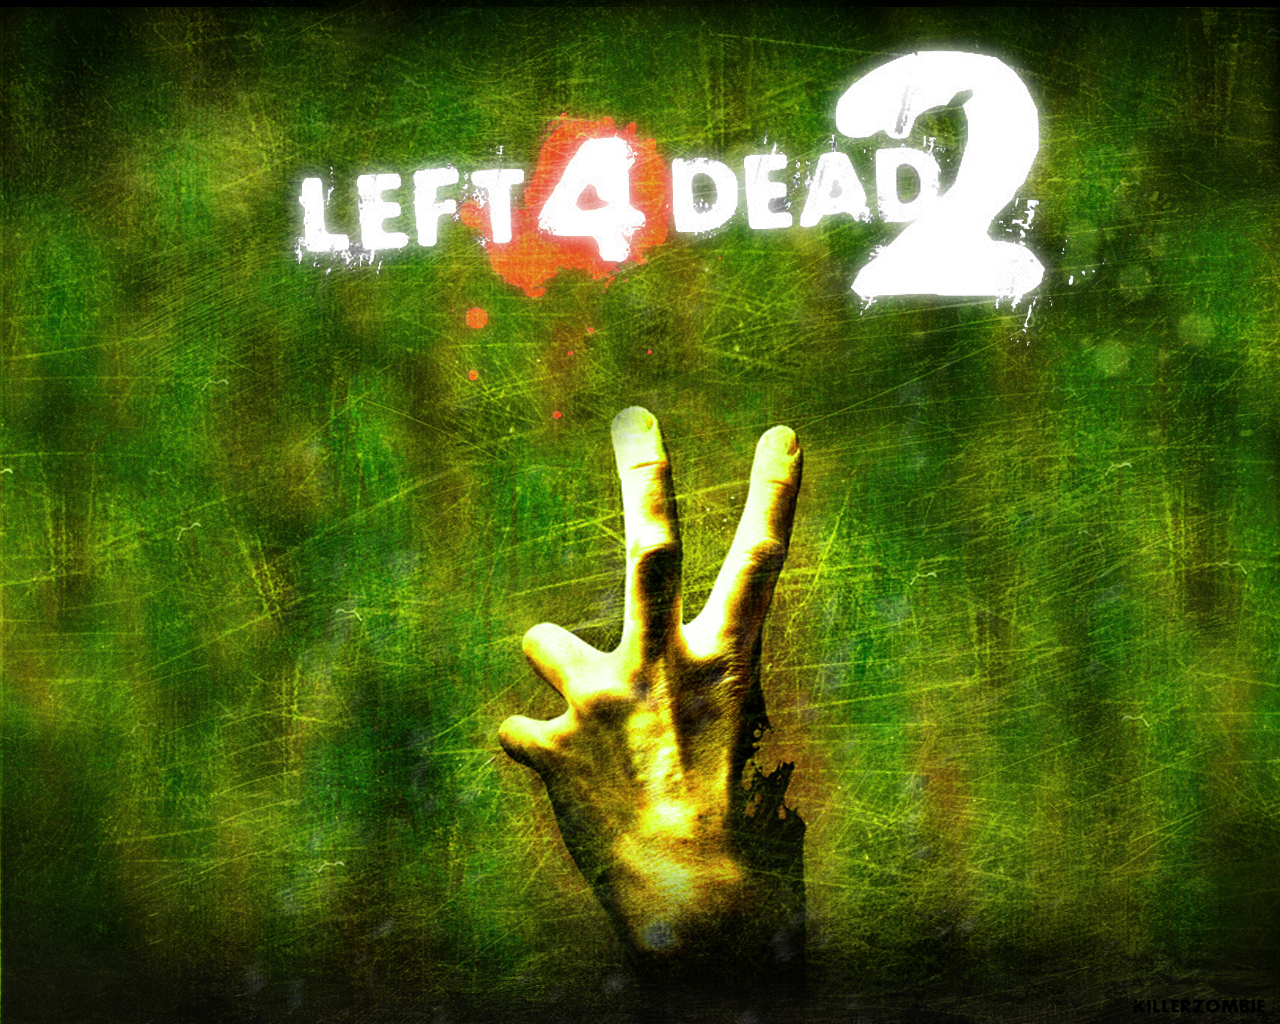 Left 4 Dead / Left 4 Dead 2 | ScreenArchery Wiki | FANDOM powered by Wikia